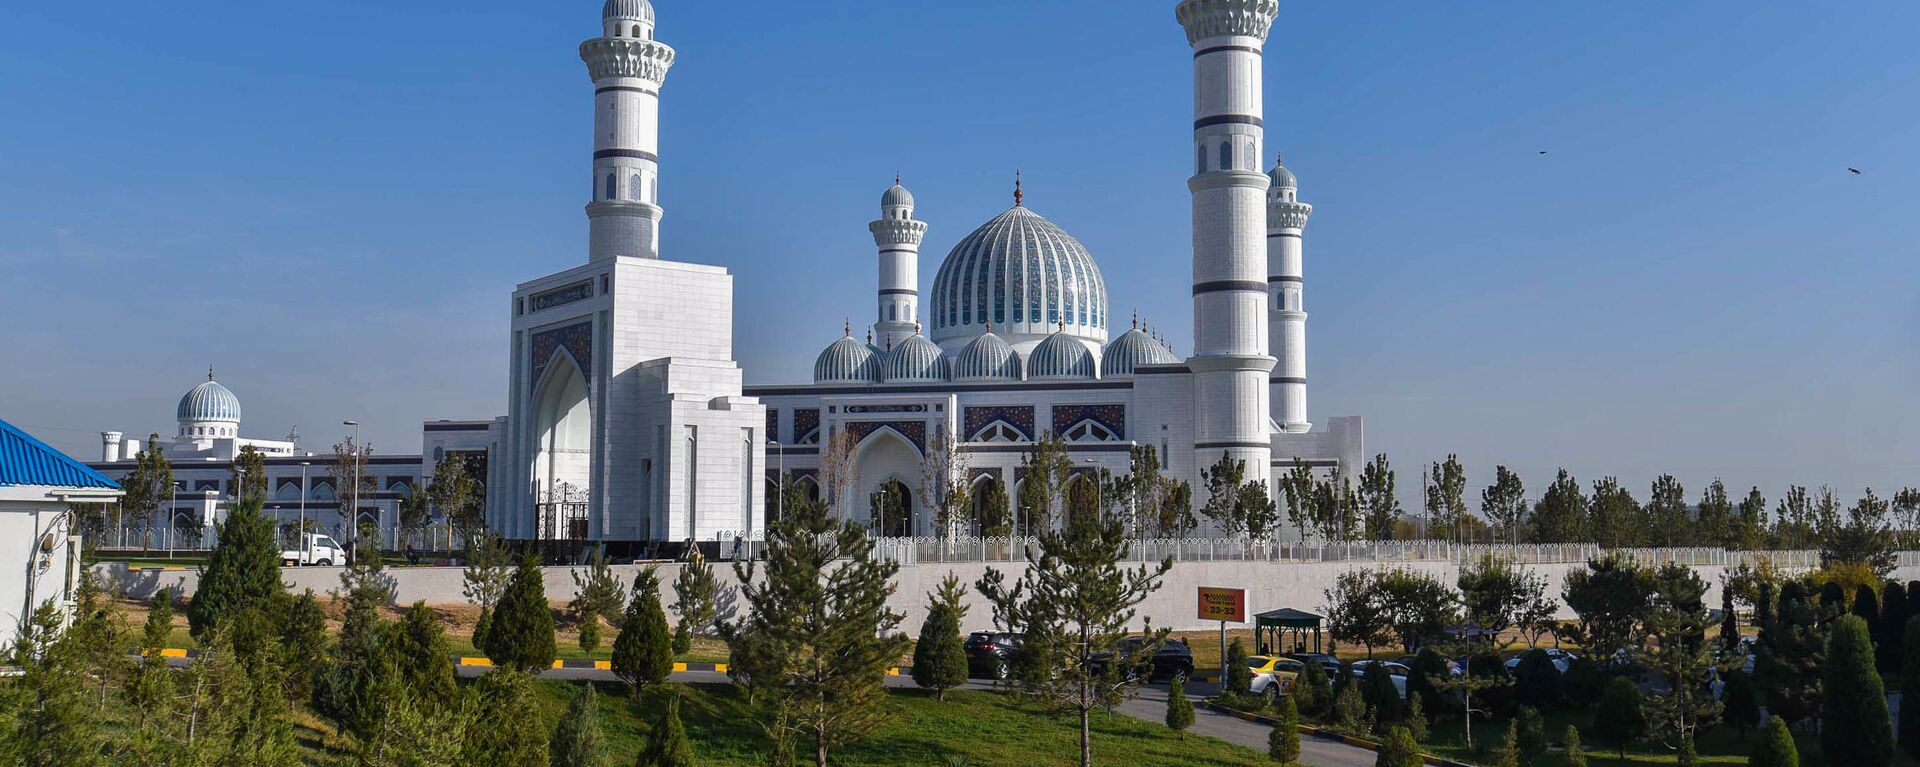 Новая мечеть в Душанбе - Sputnik Таджикистан, 1920, 01.02.2020